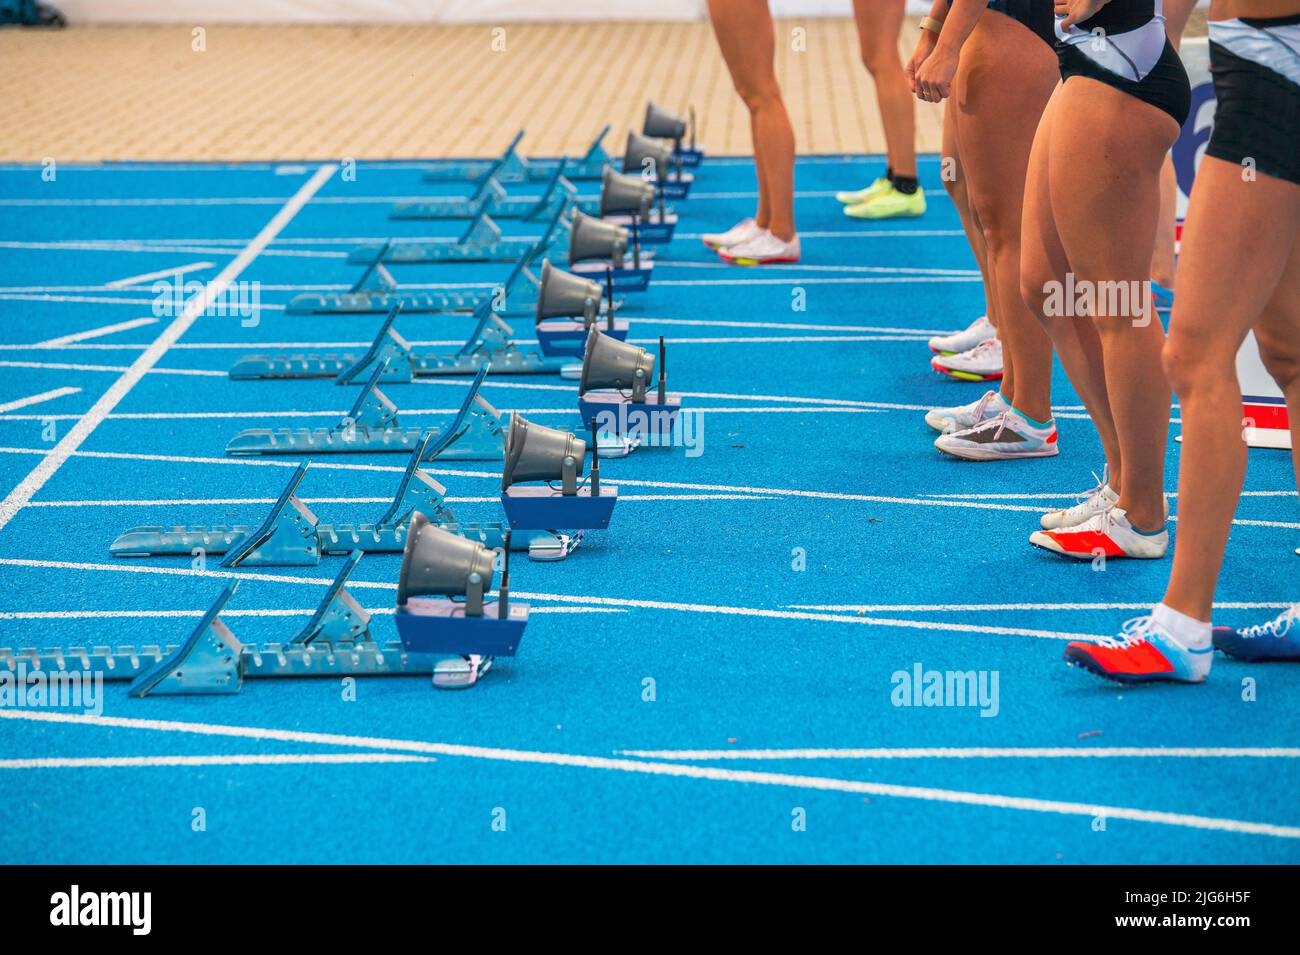 Leichtathletik, Laufen und Sprinten. Beine von Profisportlern vor dem Start eines Sprint-Rennens. Weibliche Athleten stehen vor der blauen Piste Stockfoto